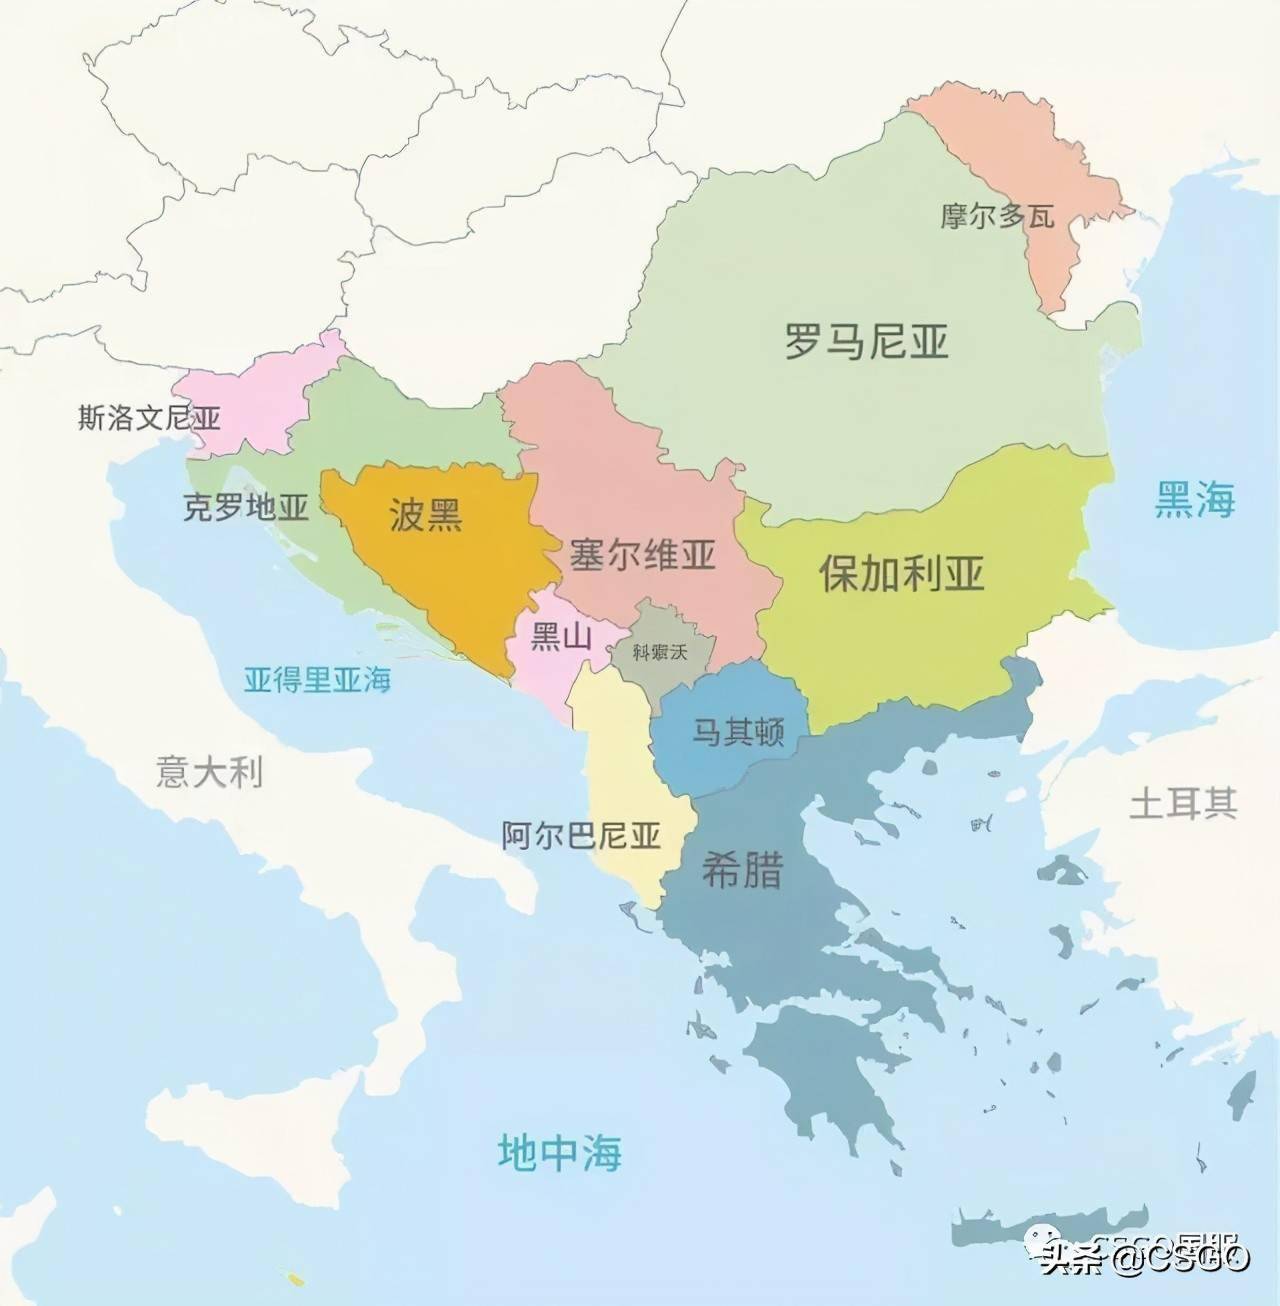 保加利亚,罗马尼亚,塞尔维亚,希腊,黑山,马其顿信仰东正教